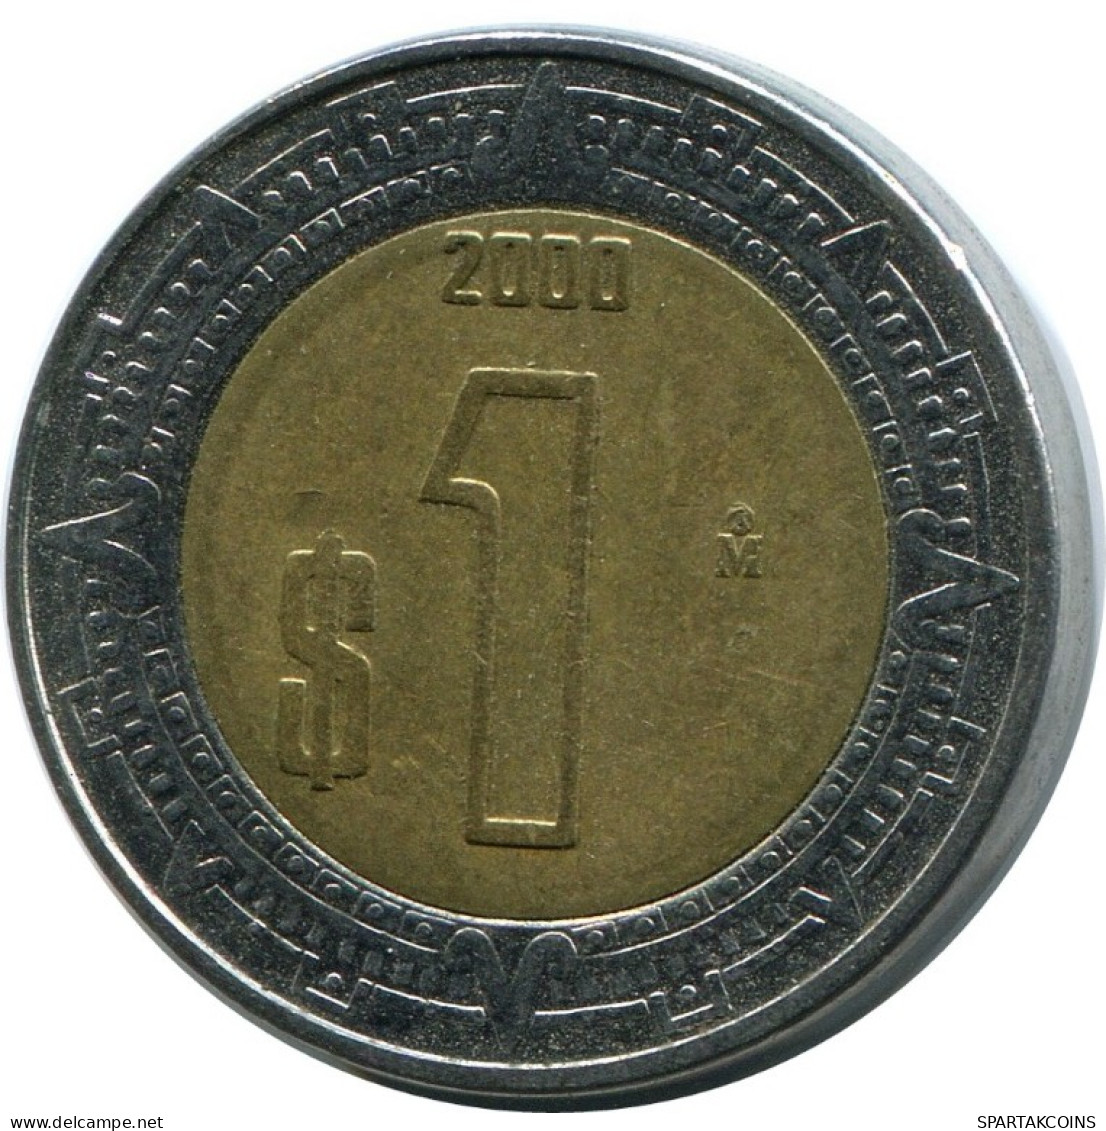 1 PESO 2000 MEXICO Coin #AH501.5.U.A - Messico